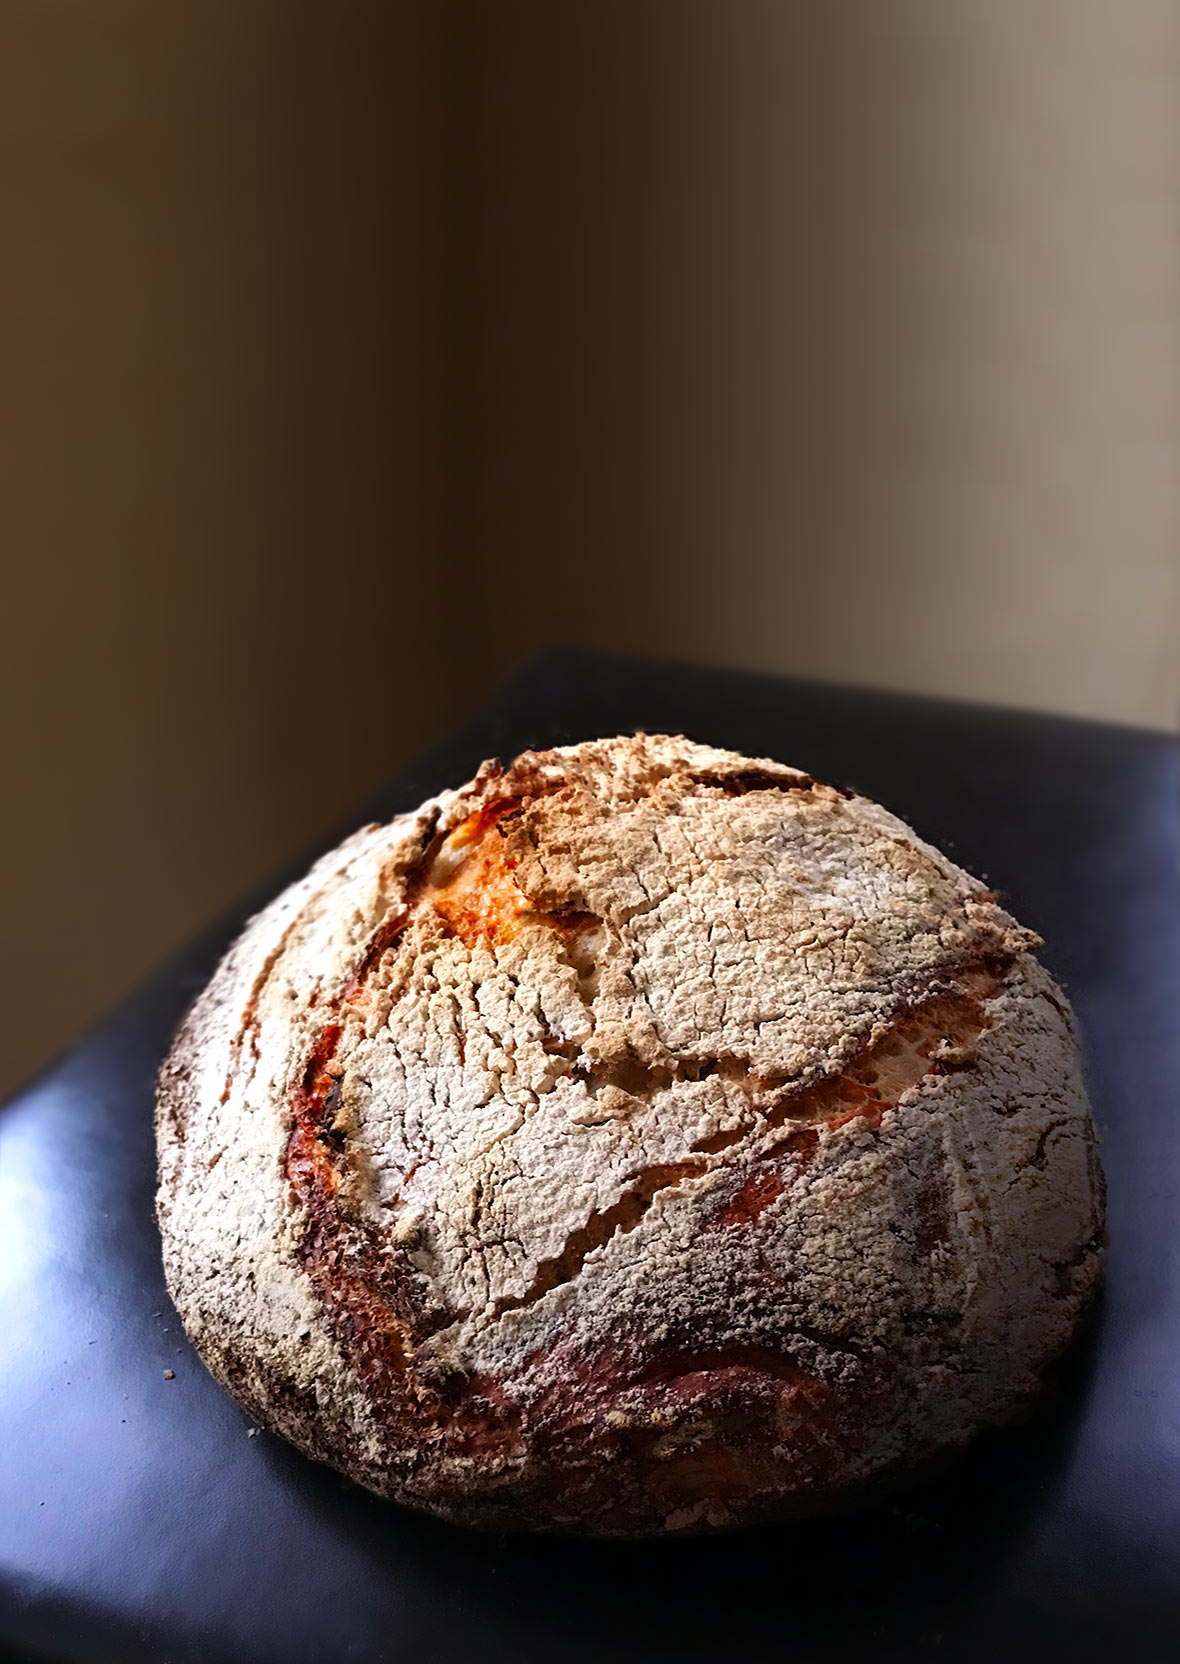 En rund limpa av Jim Laheys no-knådade bröd, pudrat med mjöl på en läderstol